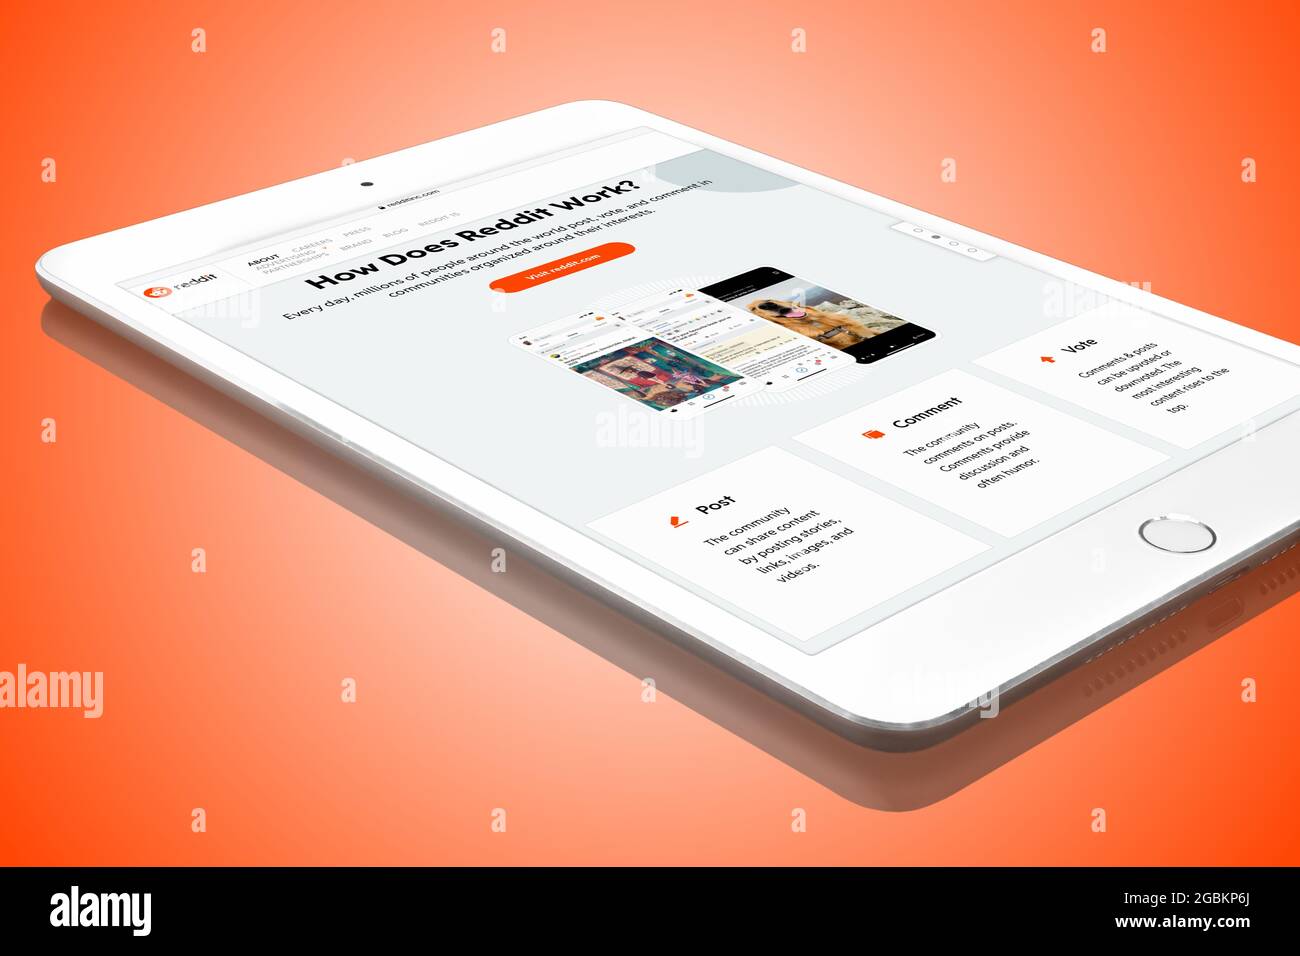 Reddit Website auf weißem Apple iPad Mini Digital Tablet PC, isoliert auf orange-rotem Hintergrund. Reddit ist eine Zusammenfassung sozialer Nachrichten. Stockfoto